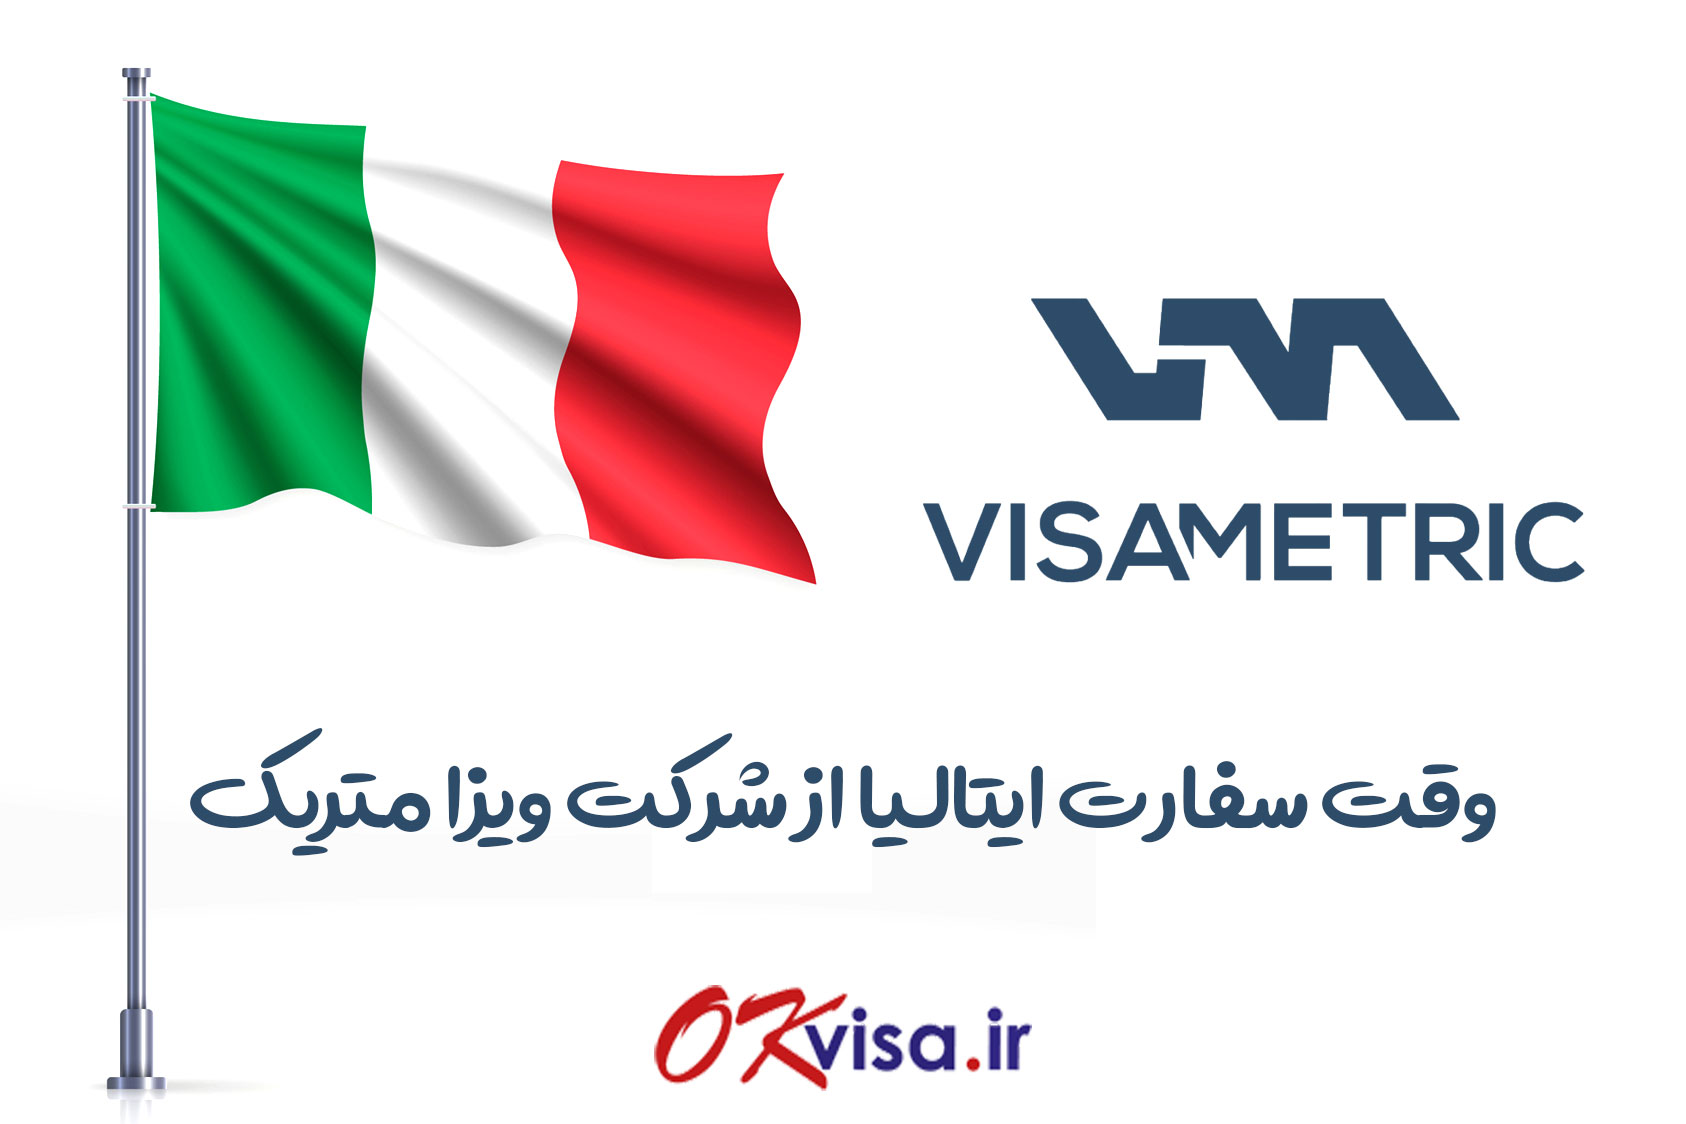 وقت سفارت ایتالیا ویزا متریک